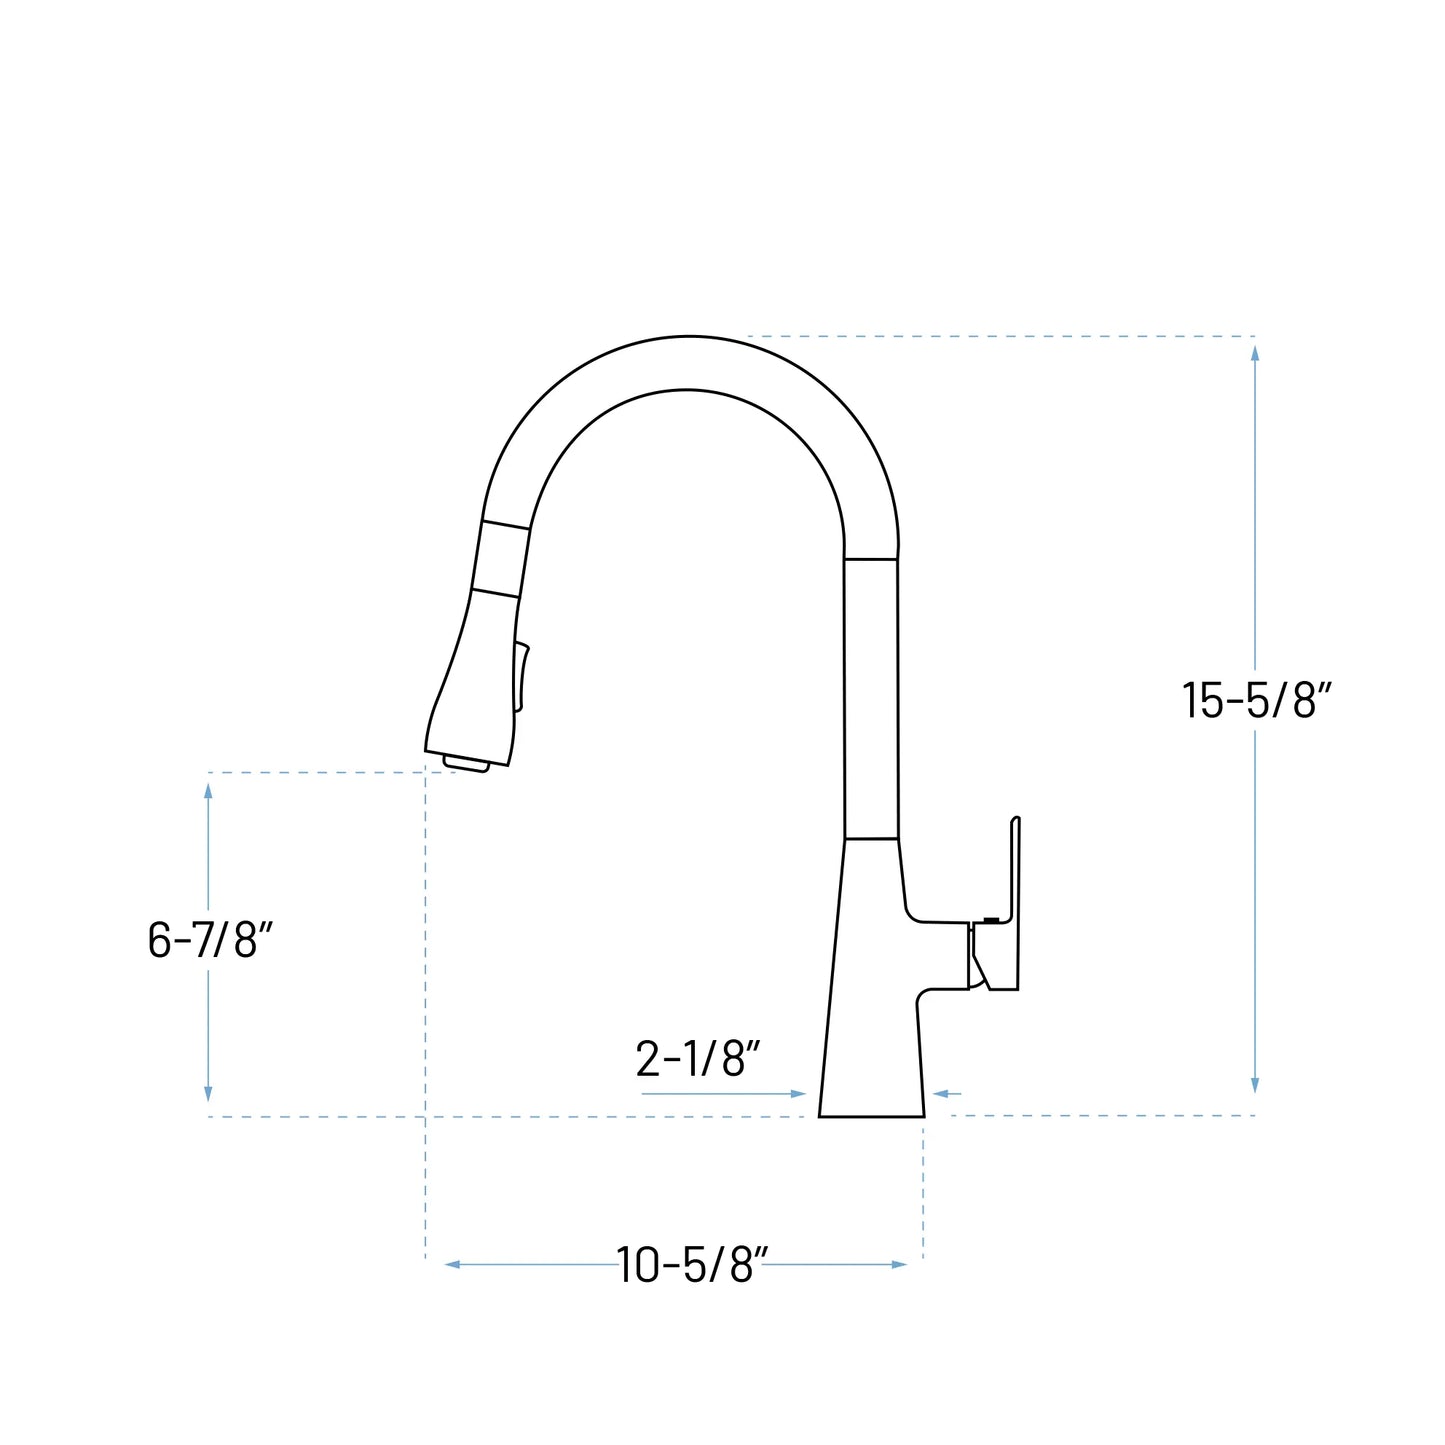 A-806-C Single Handle Kitchen Faucet